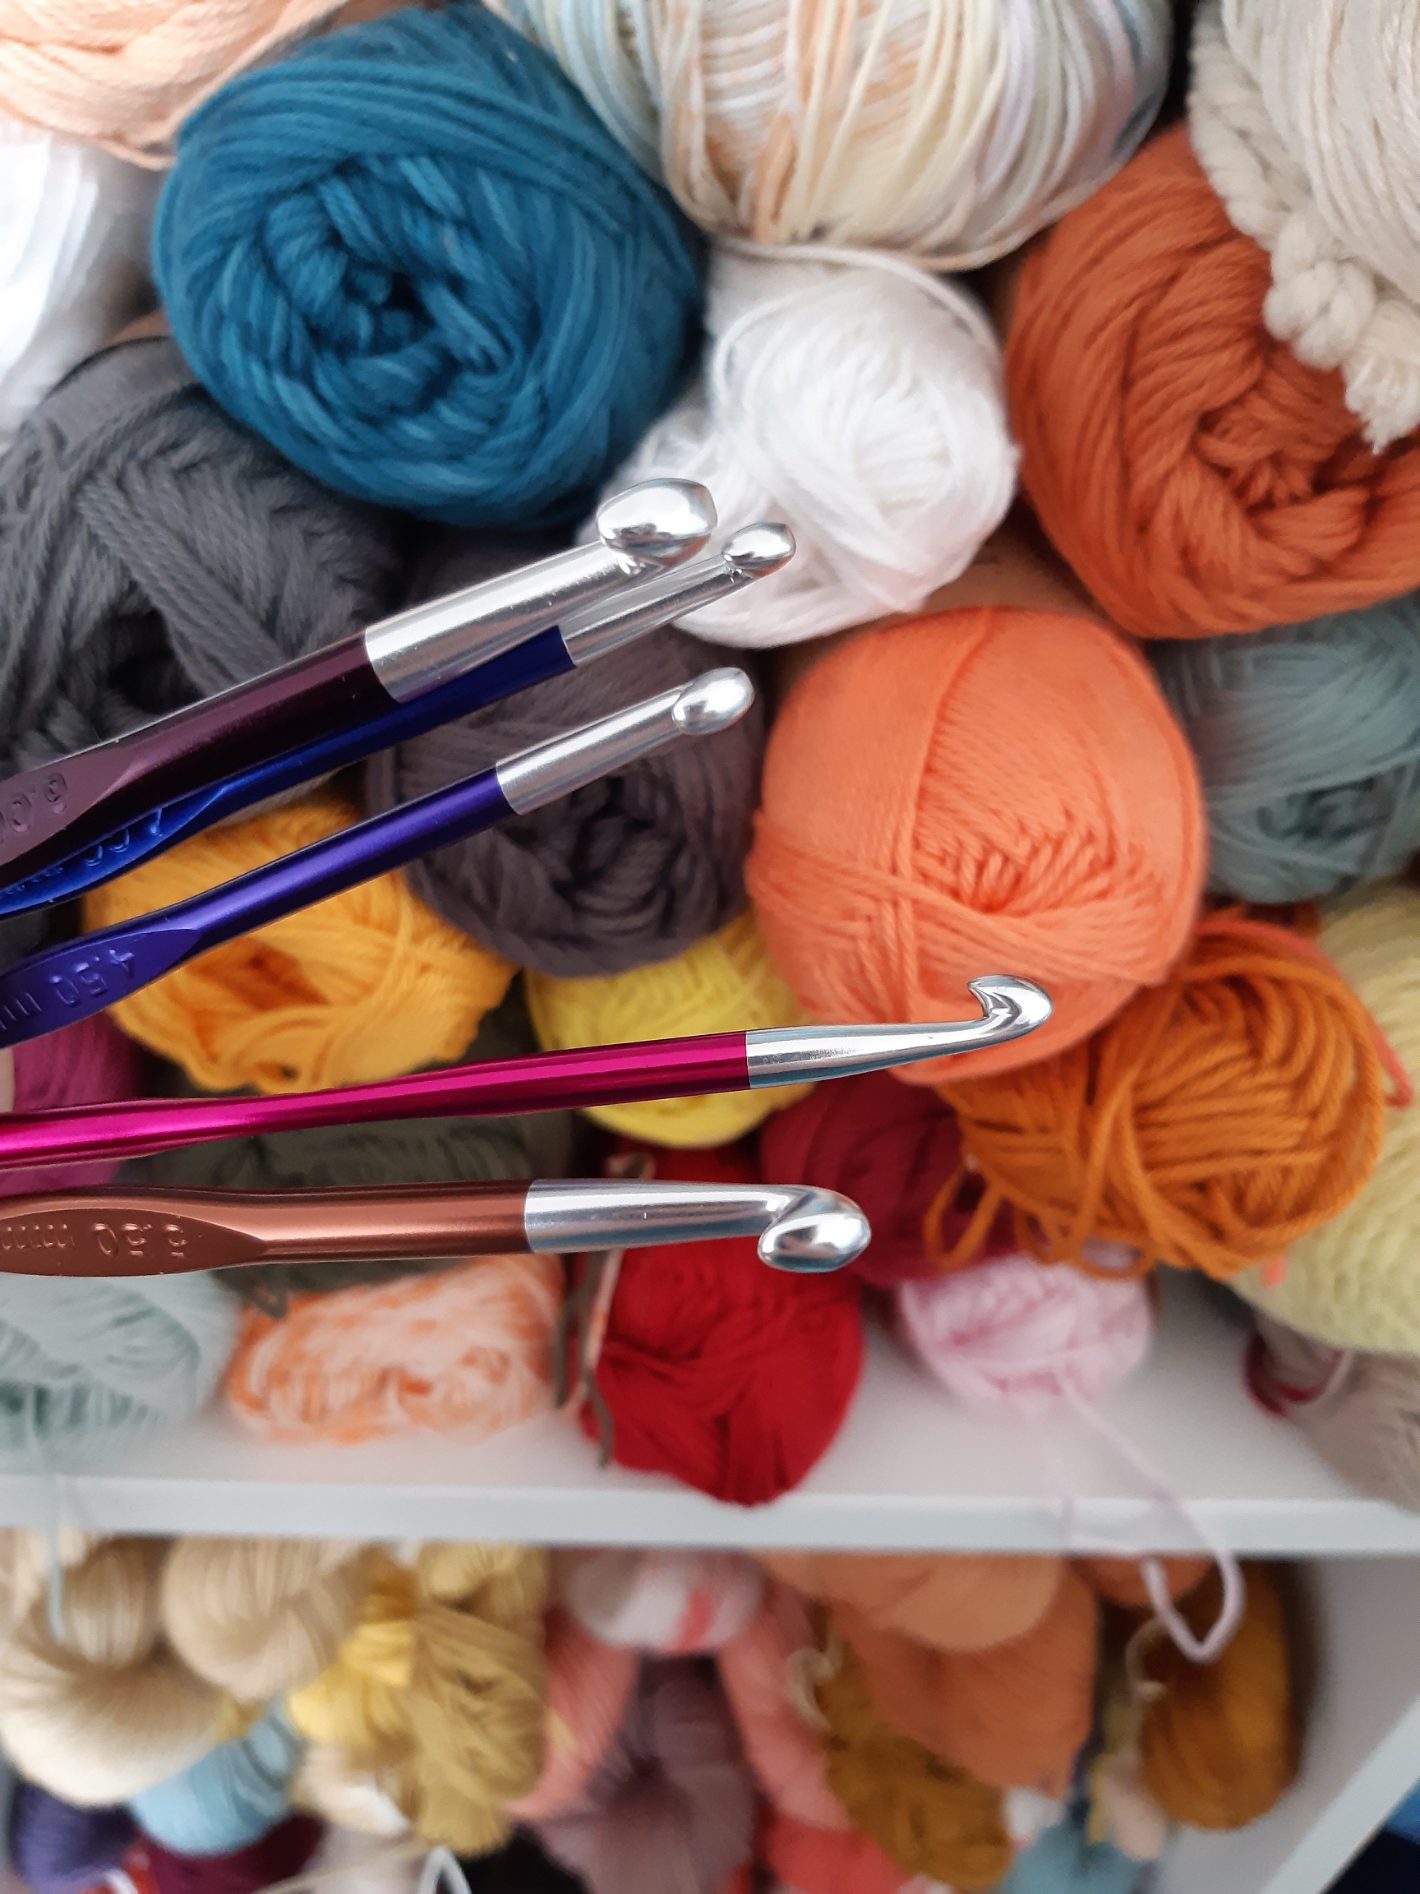 Choisir la laine pour son projet de crochet - Francrochet, Le Collectif